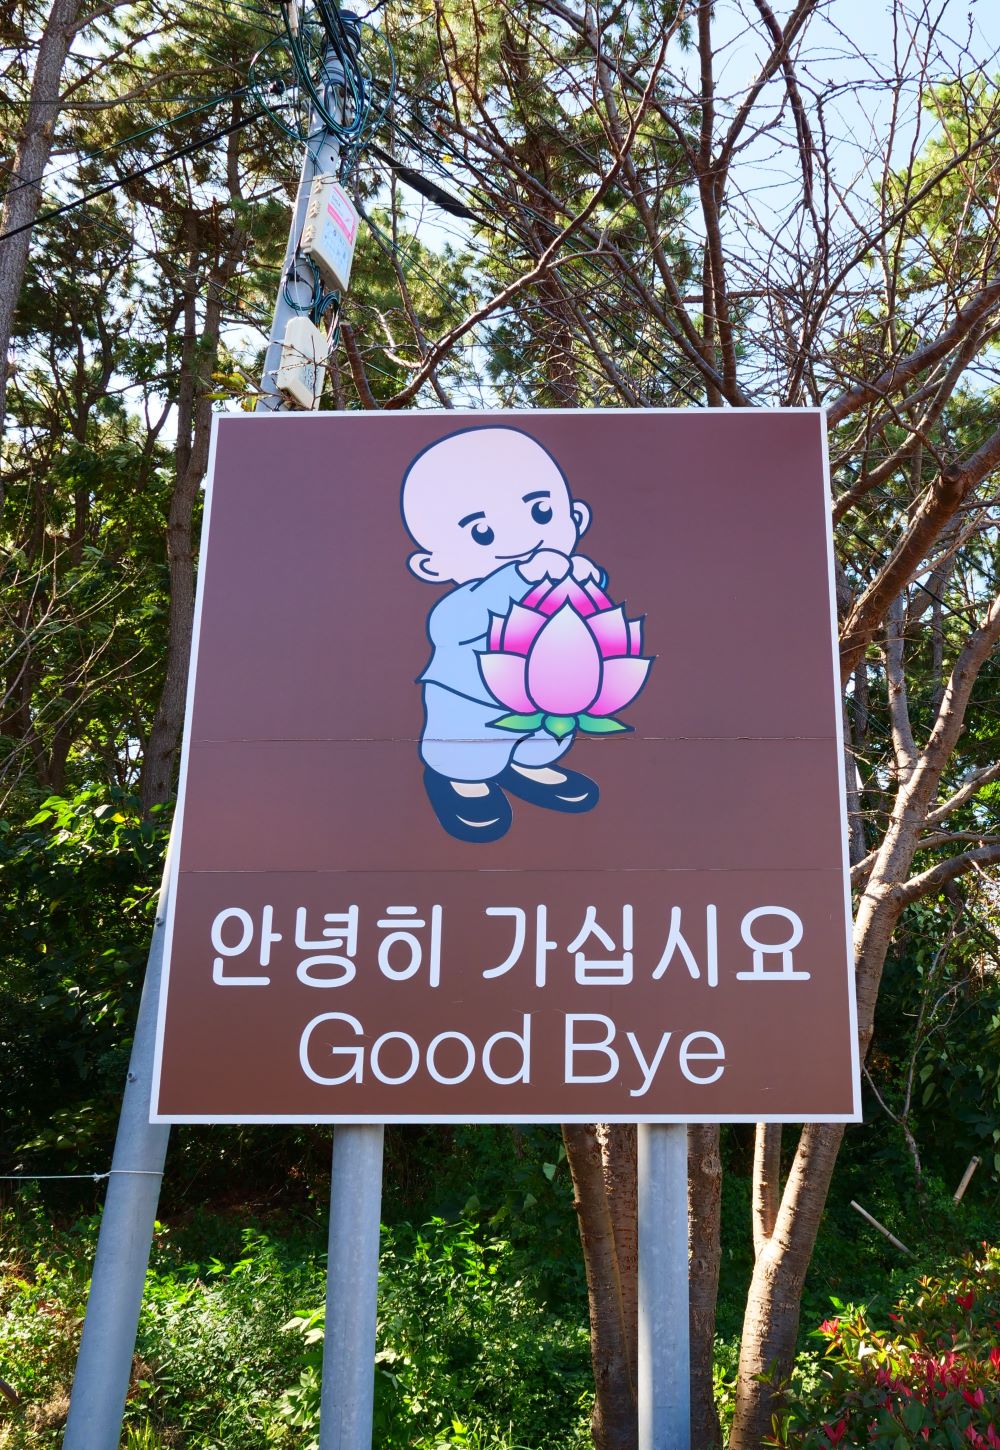 Ezzel a turistaútvonal véget is ér a Hedong Jongkungsza területén